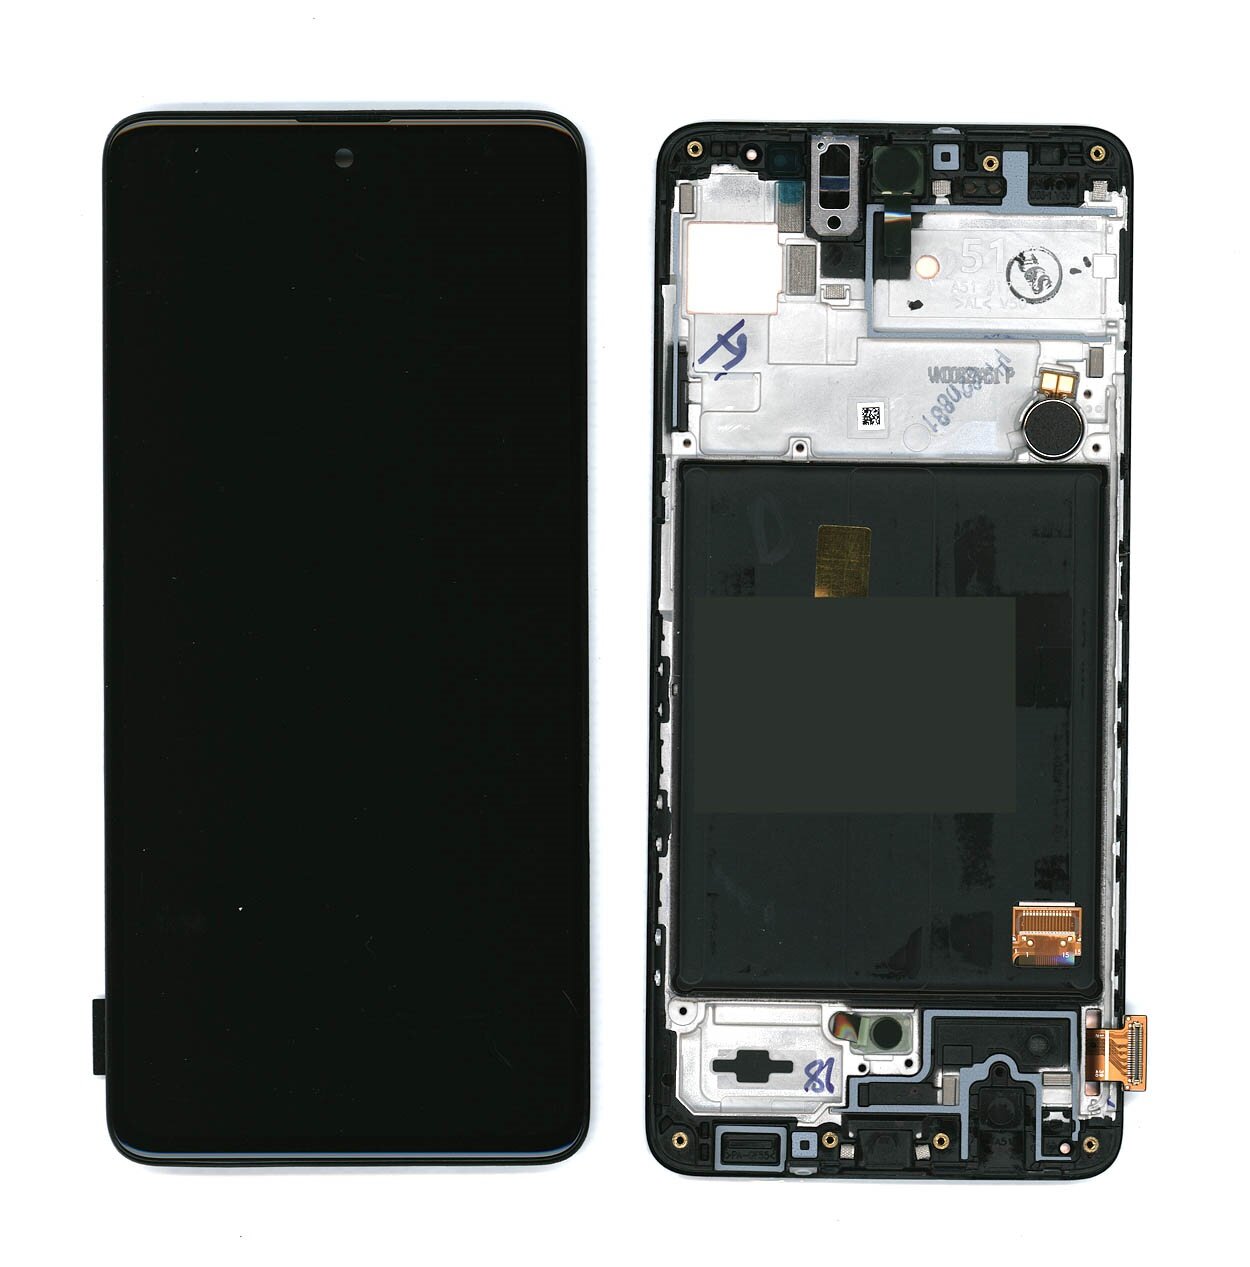 Дисплей (модуль) для Samsung Galaxy A51 SM-A515F в сборе с тачскрином (Amoled) черный